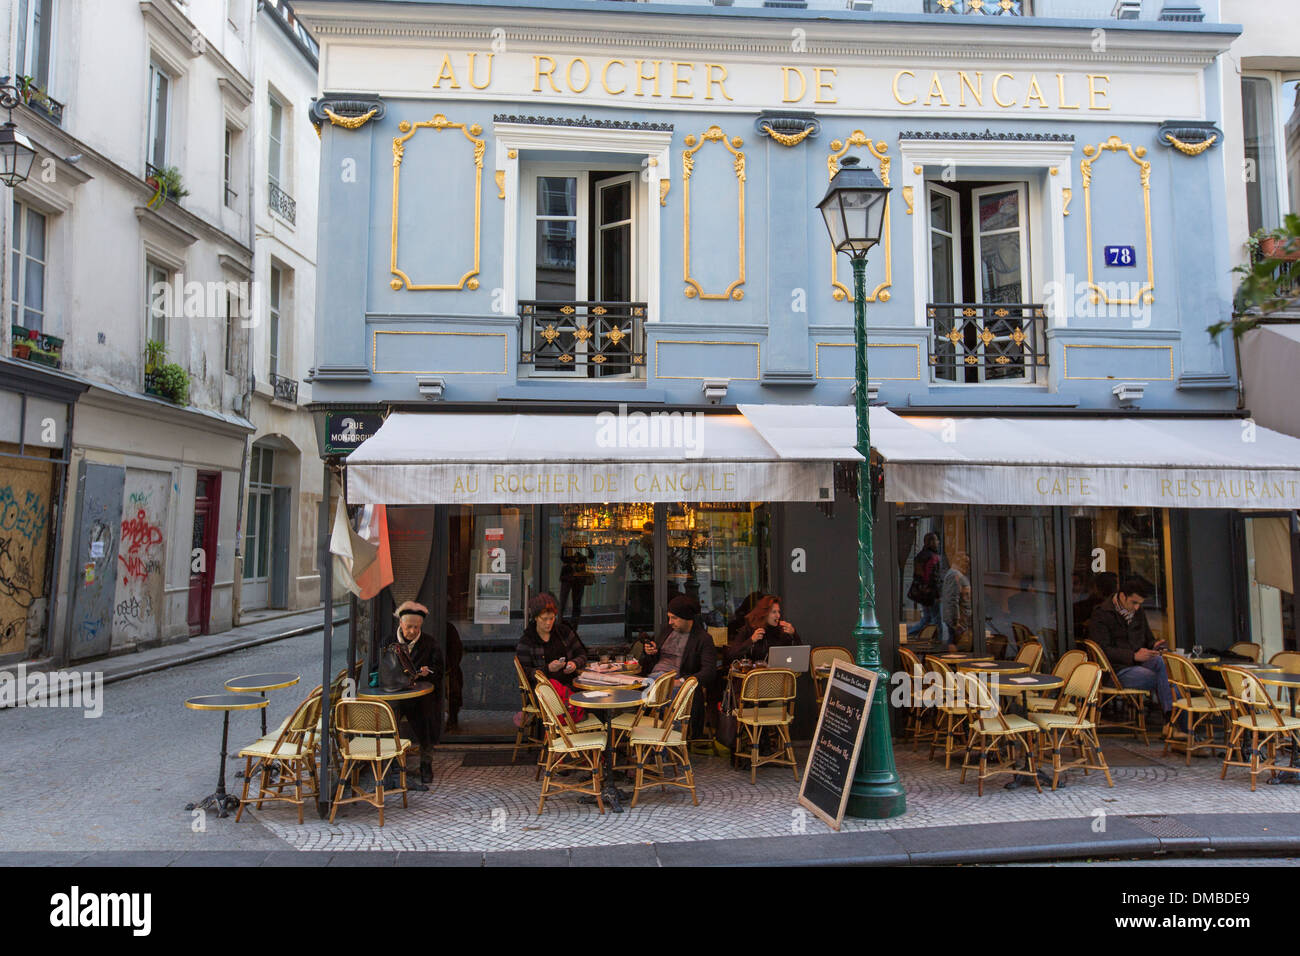 The Au Rocher De Cancale cafe on Rue Montorgueil in Paris, France Stock Photo